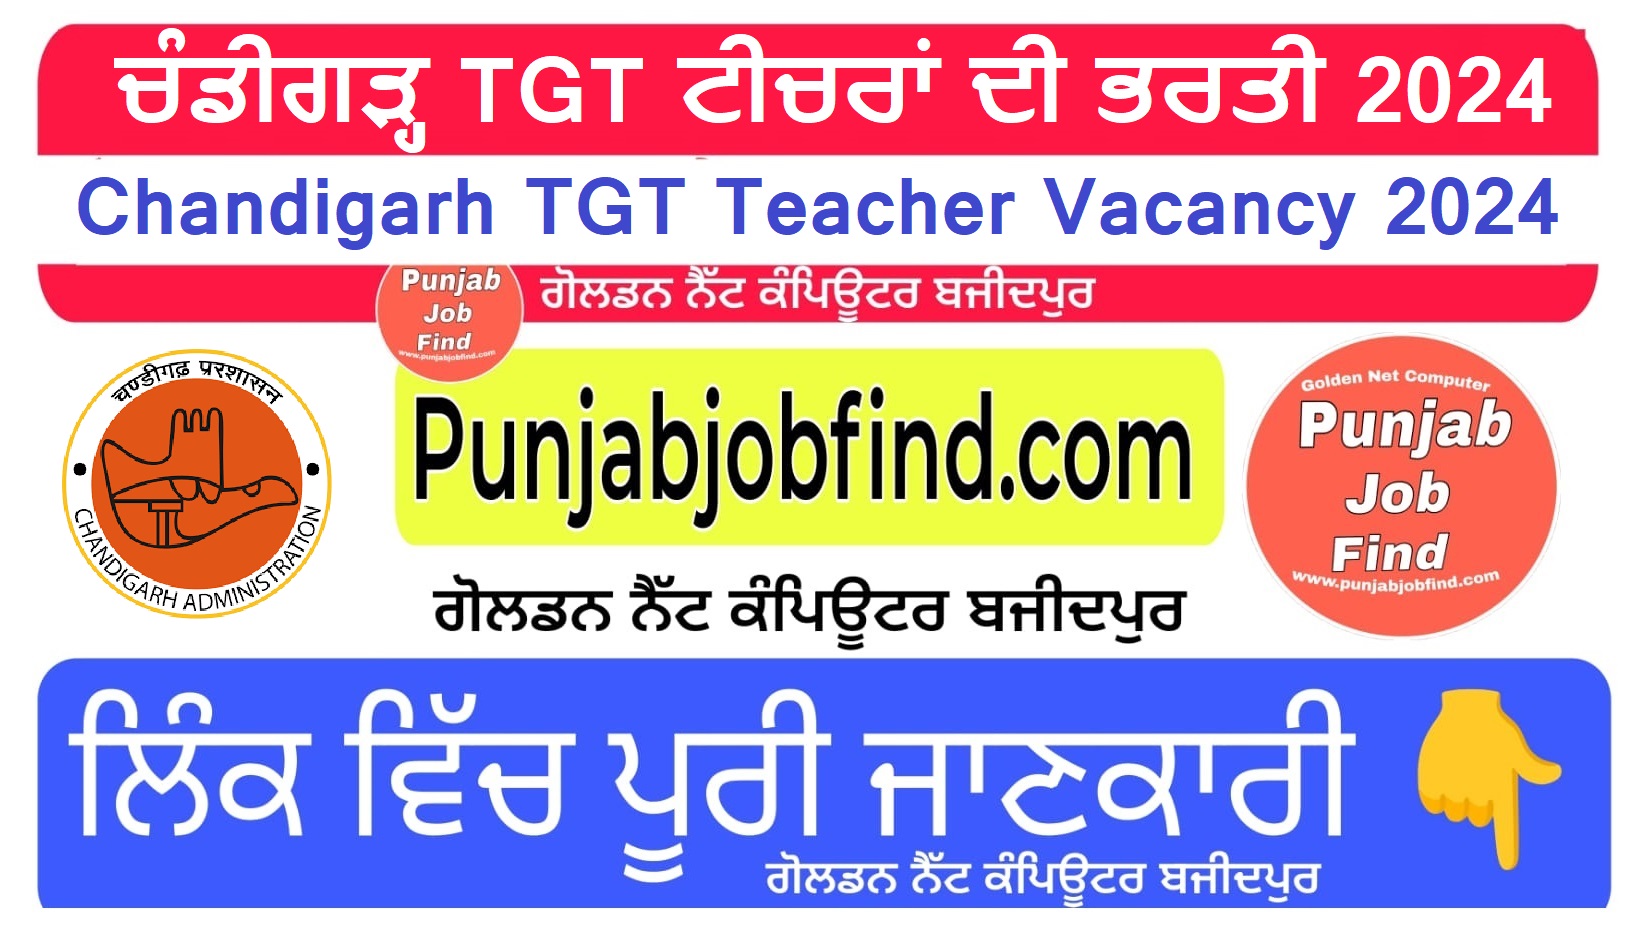 Chandigarh TGT Teacher Vacancy 2024